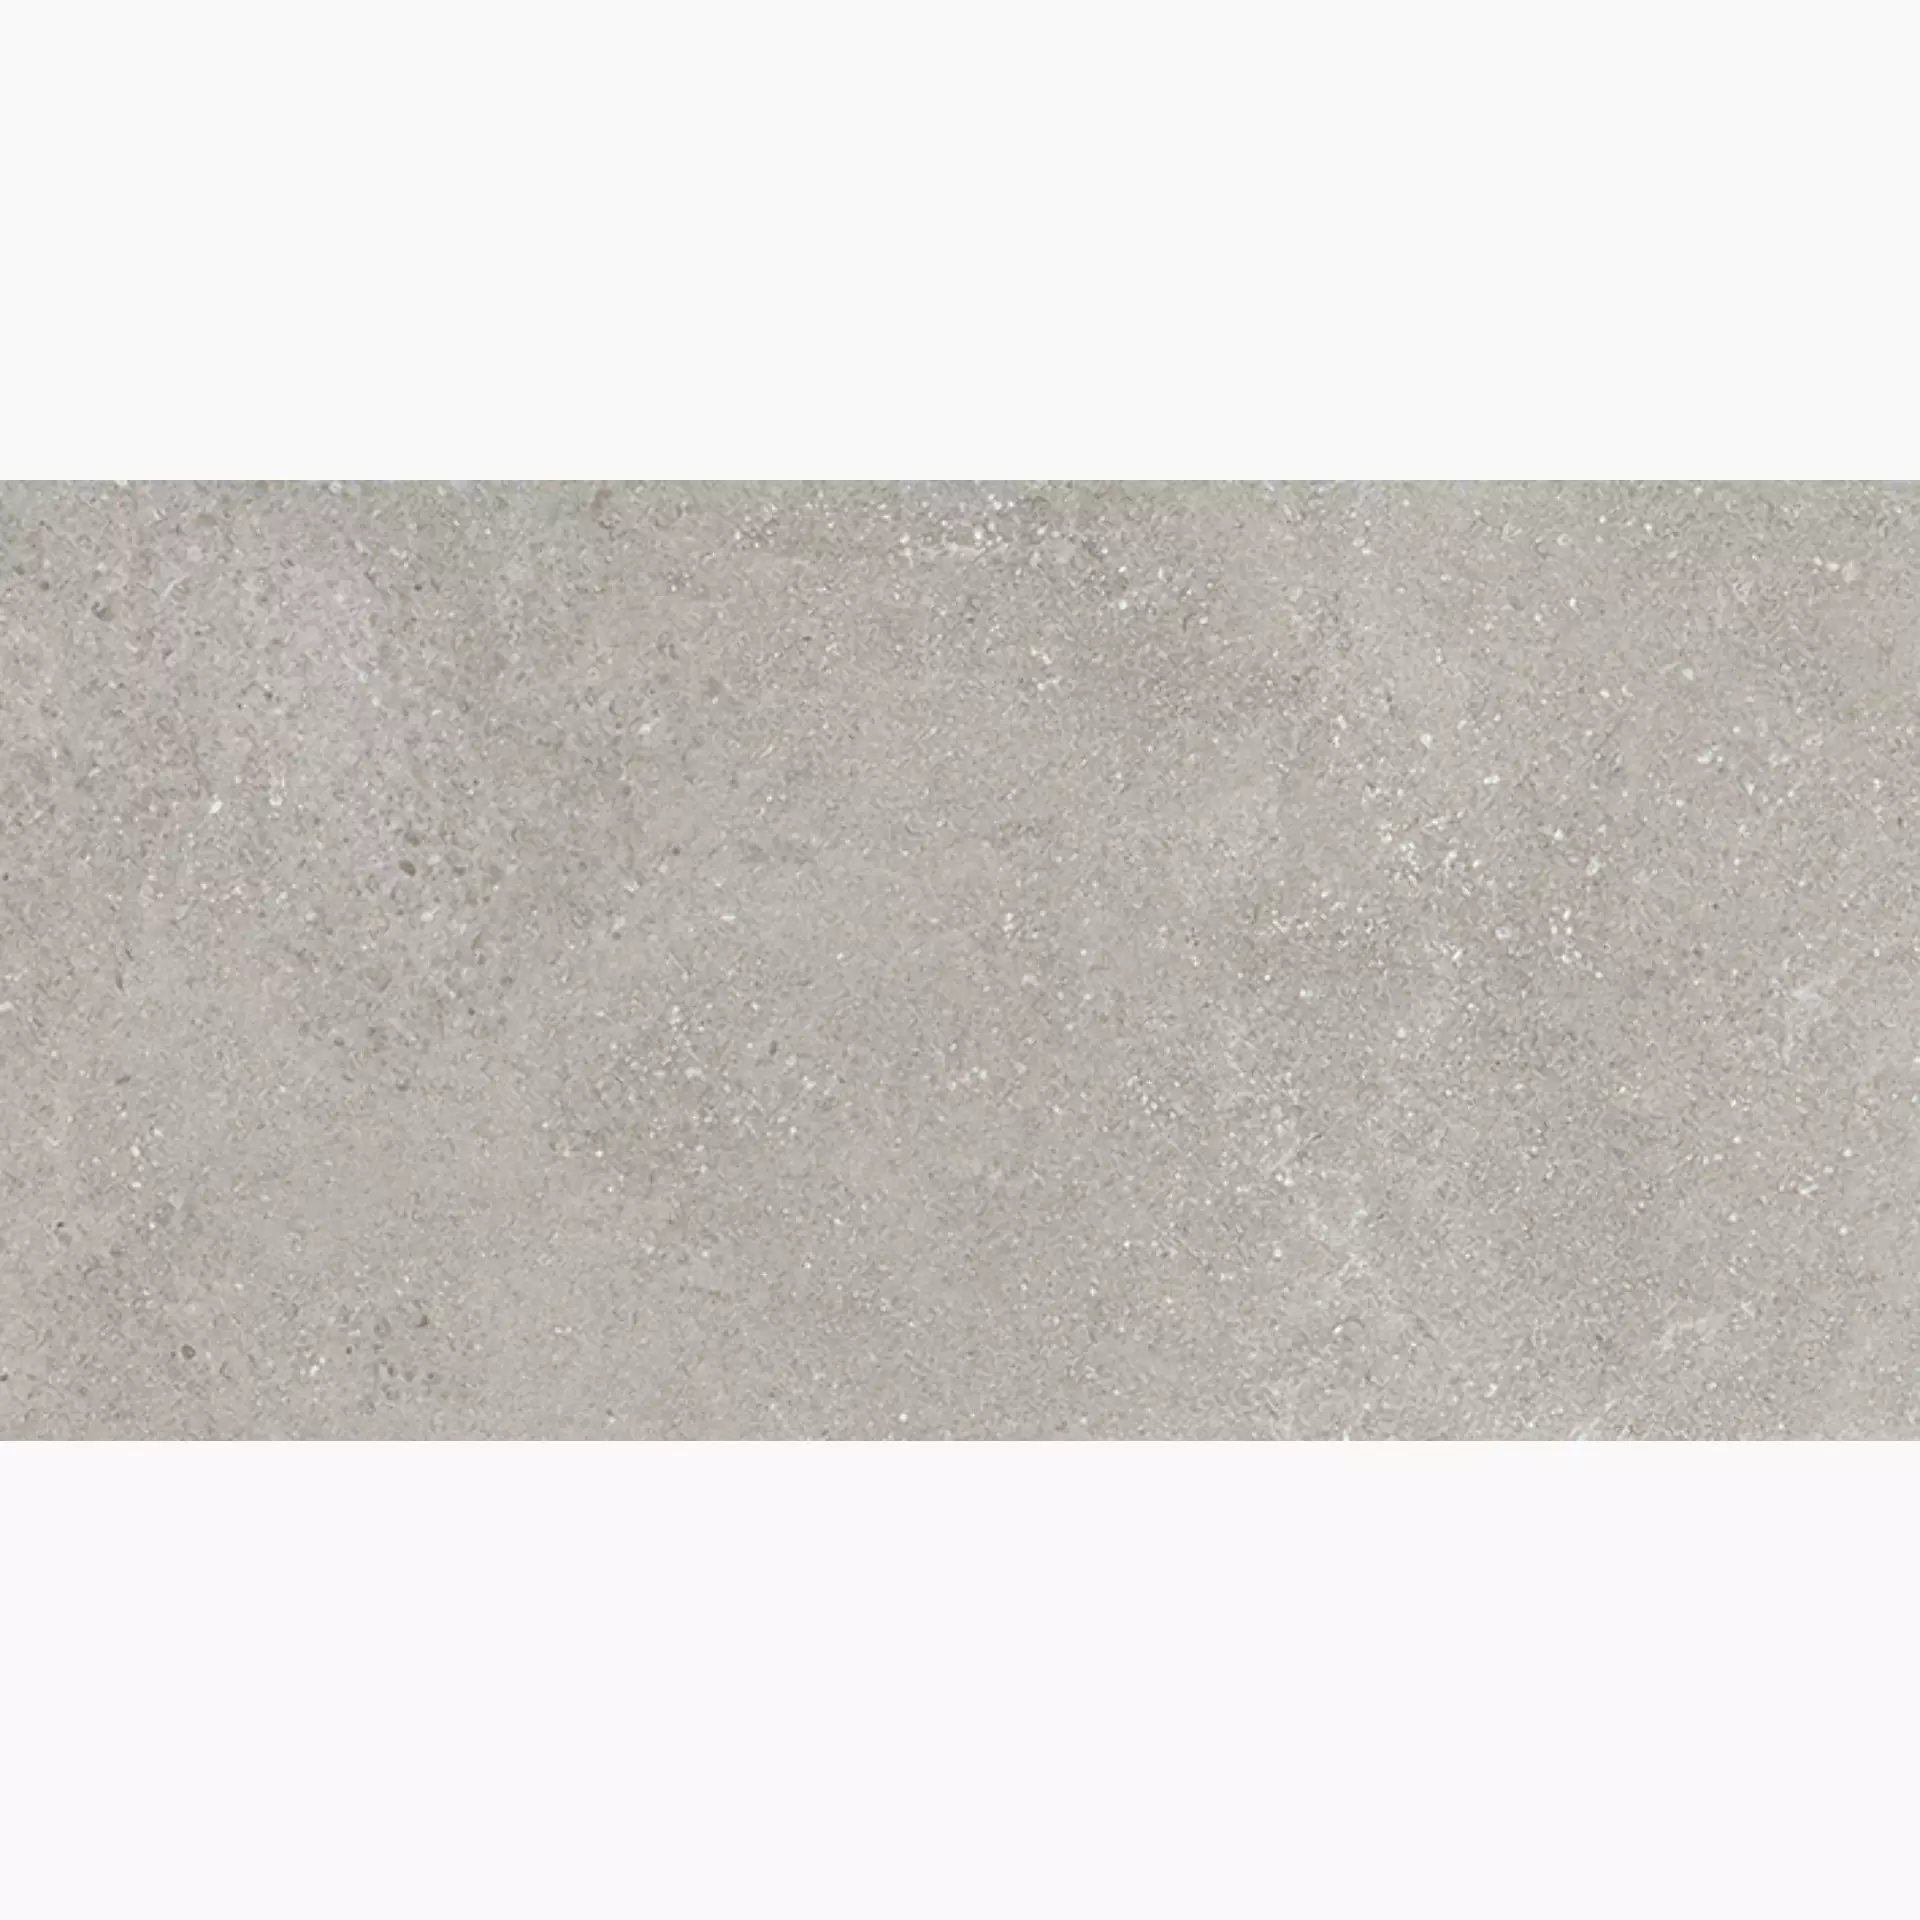 Wandfliese,Bodenfliese Villeroy & Boch Hudson Ash Grey Rough – Polished Ash Grey 2576-SD5L geschliffen 30x60cm rektifiziert 10mm